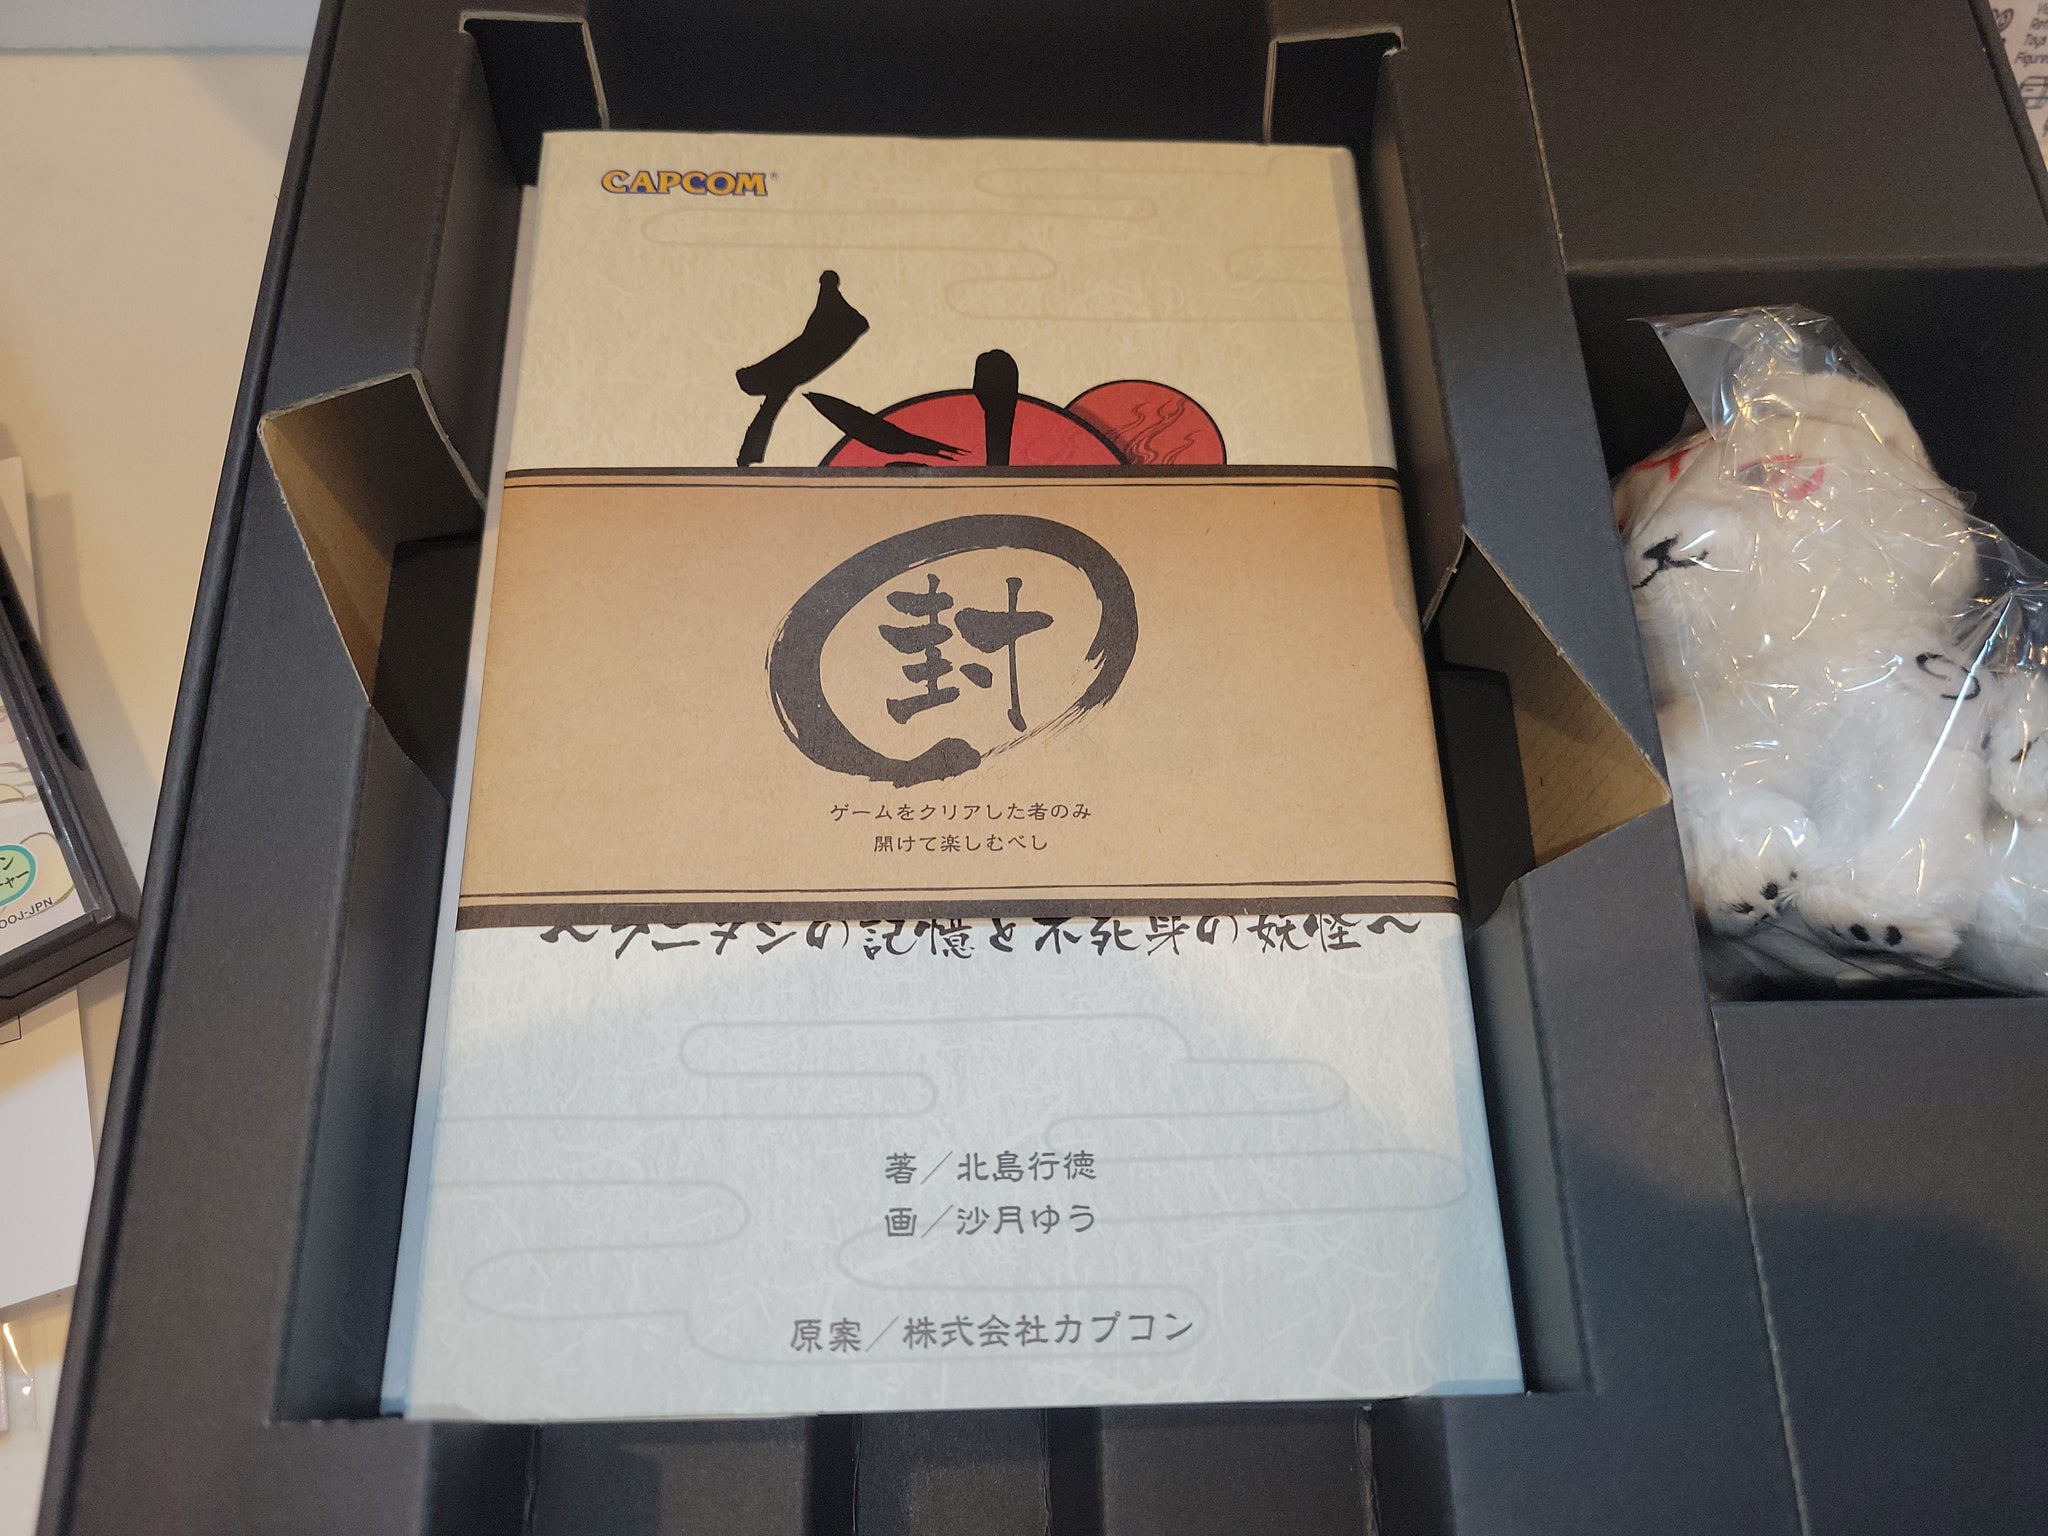 Okamiden: Chisaki Taiyou [e-capcom Collector's Edition] for